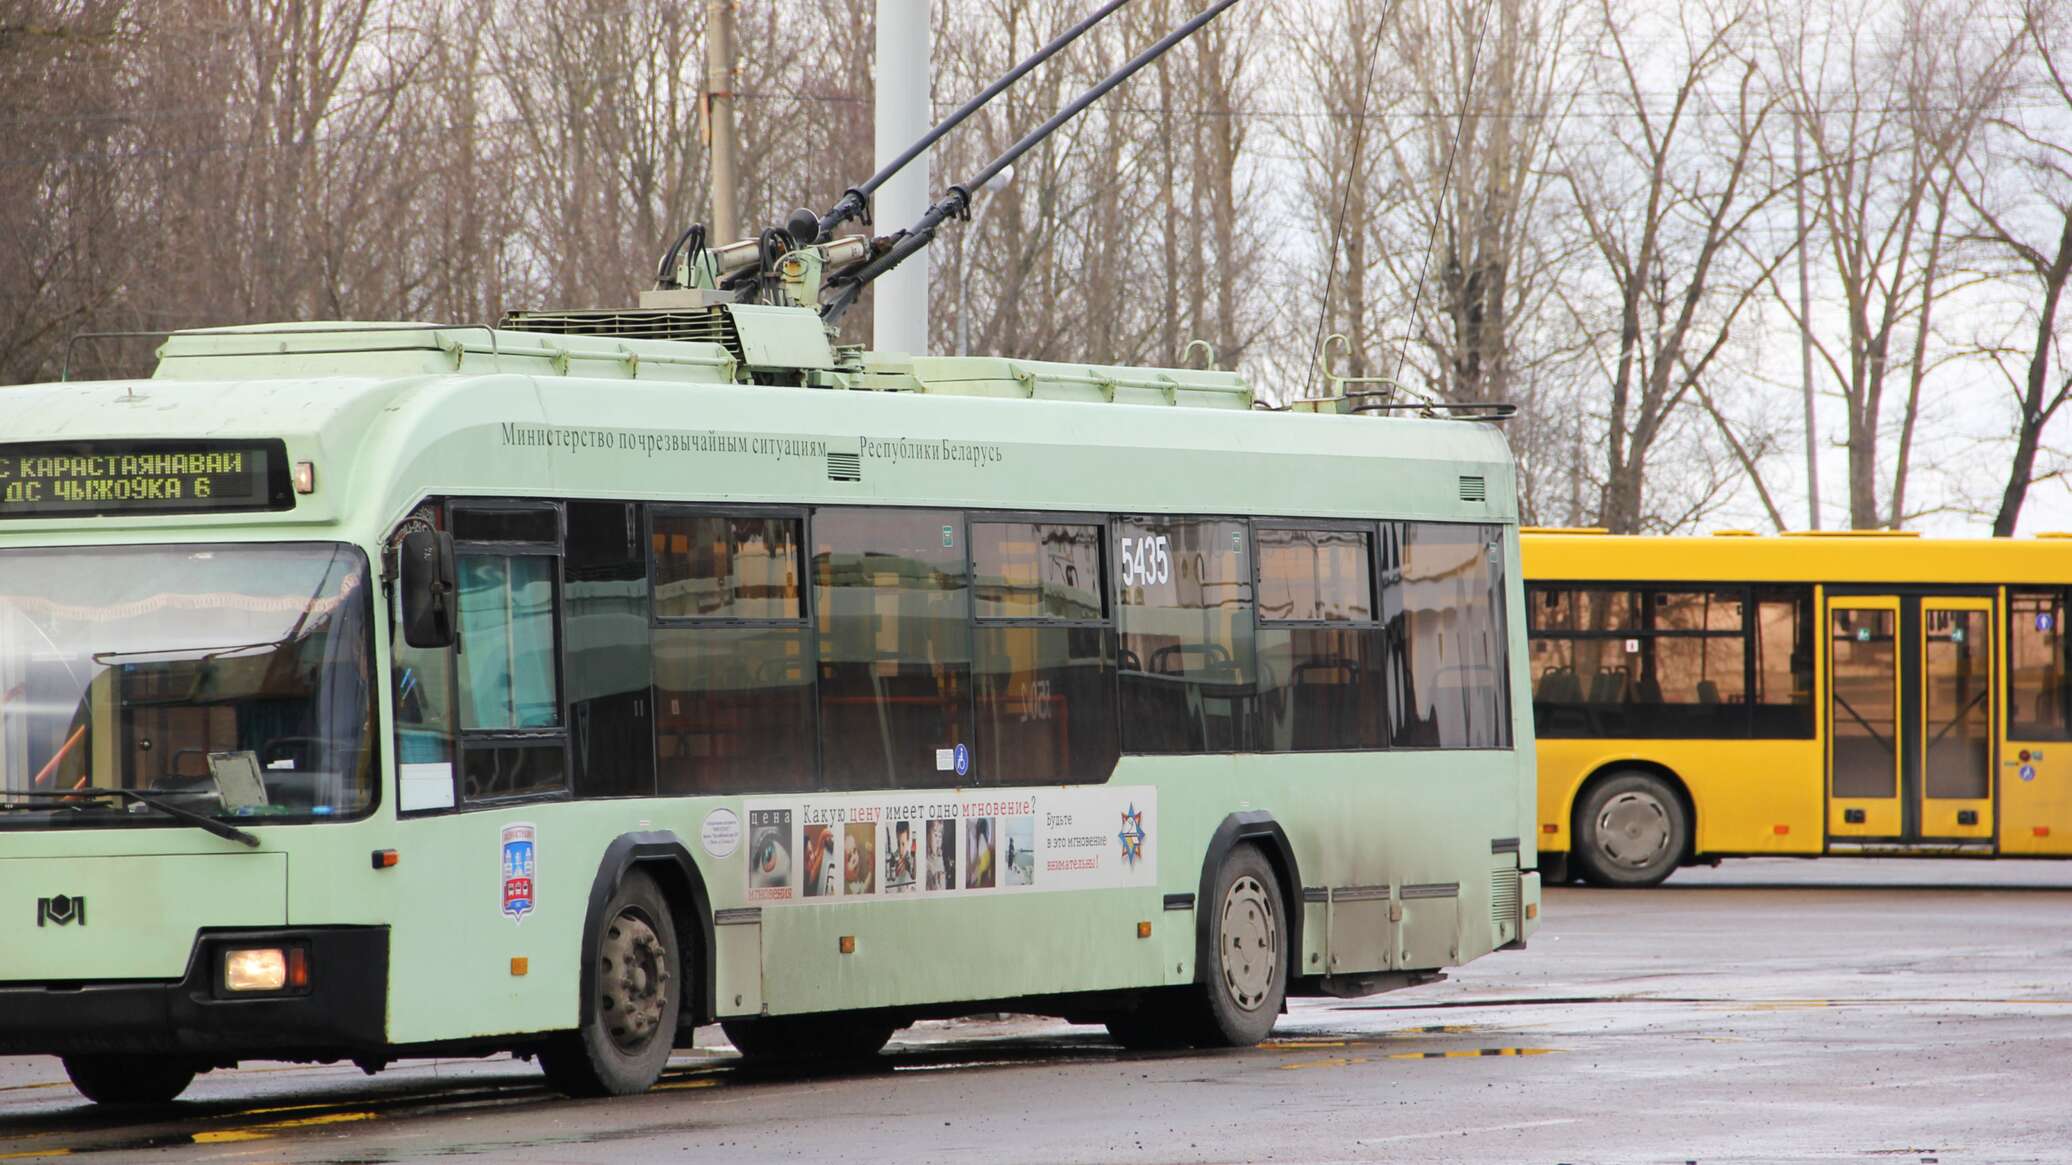 Троллейбус номер 9. Могилев троллейбусный парк. Жалобы на водителя троллейбуса номер 2370. Белорусский троллейбус с автономным ходом цена и картинки.